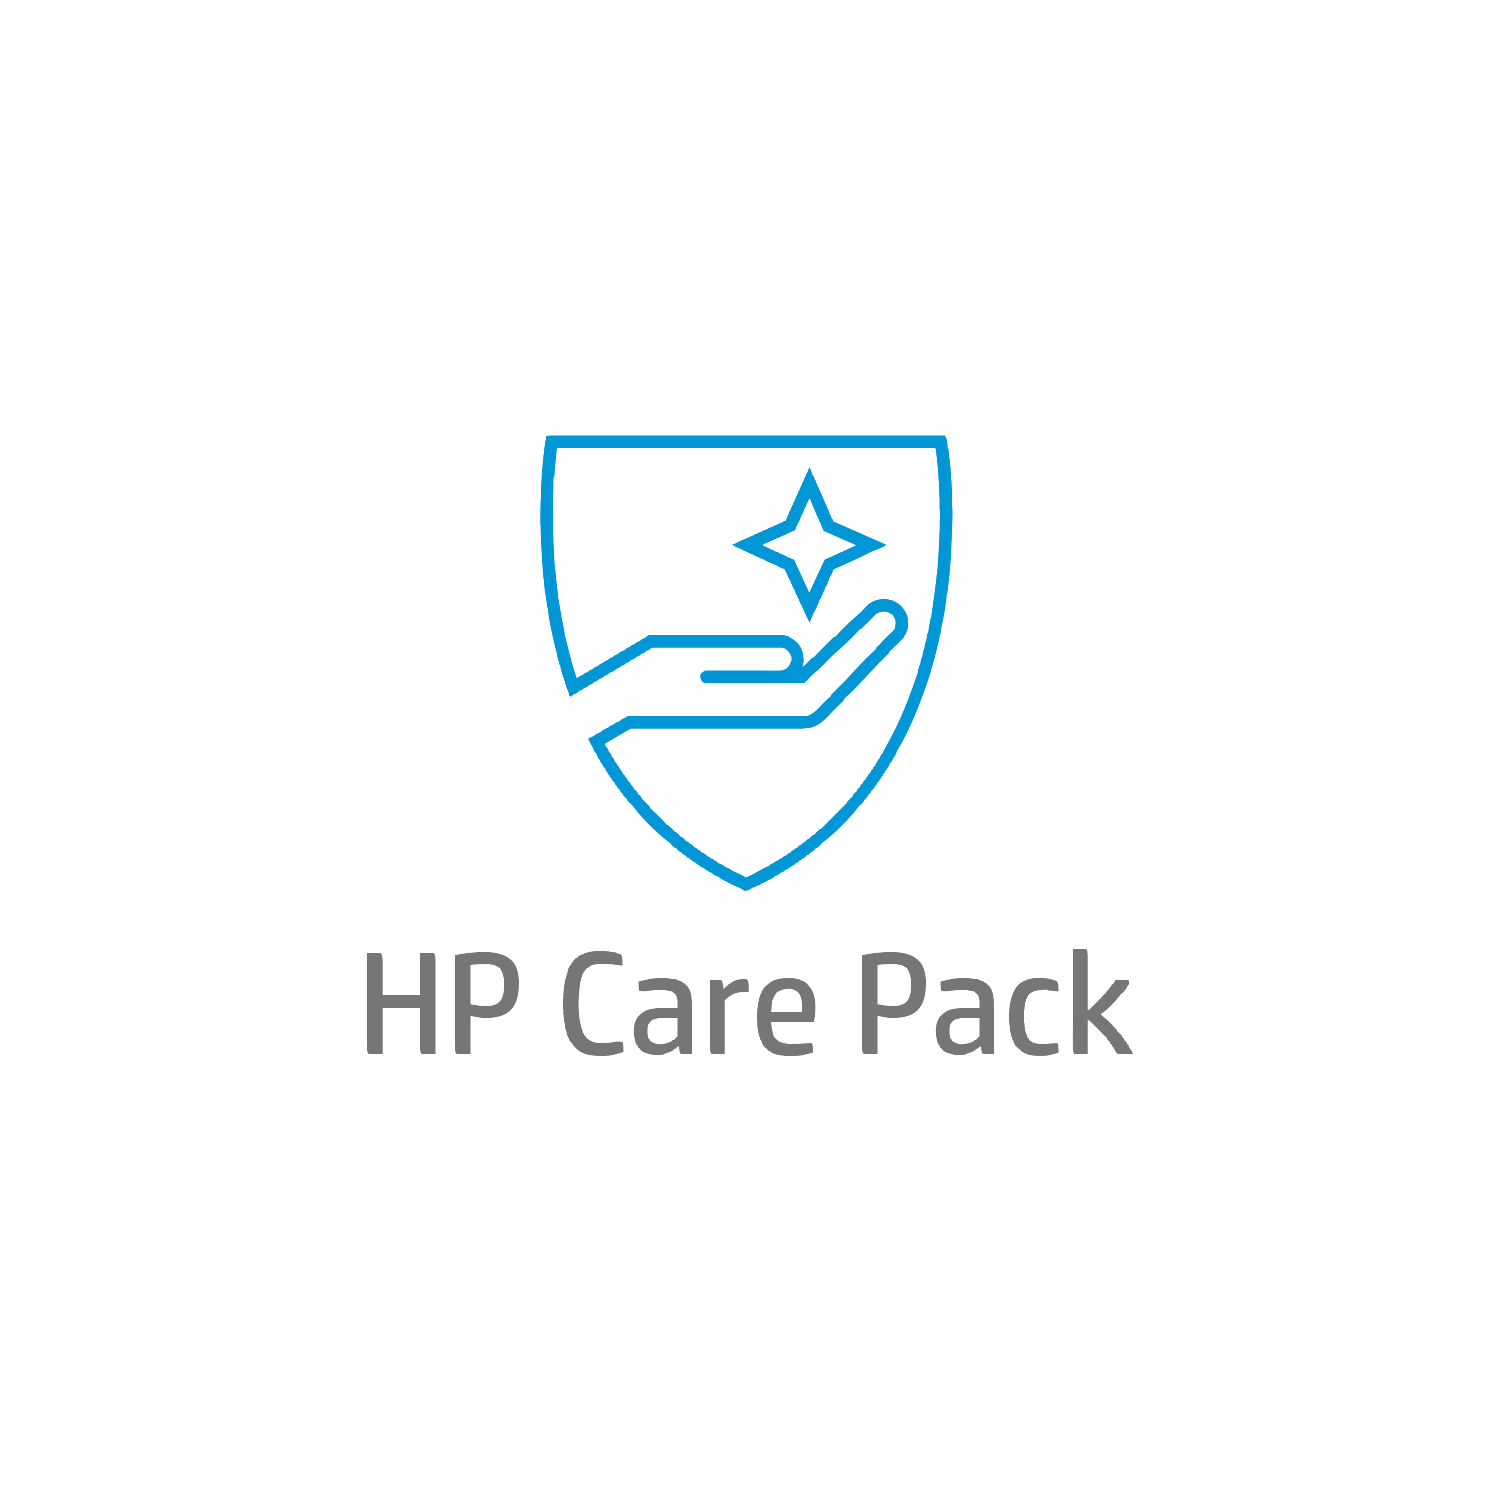 Bild von HP Care 5 Jahre Hardware-Support mit Einbehaltung defekter Medienträger (DMR) für Mobile Workstations - Externe Reparatur - Außerhalb des Kundenstandorts - Unter Garantie - Standardarbeitstage - 9 Stunden - 5 Jahre - Reparatur innerhalb von 3–7 Werktagen